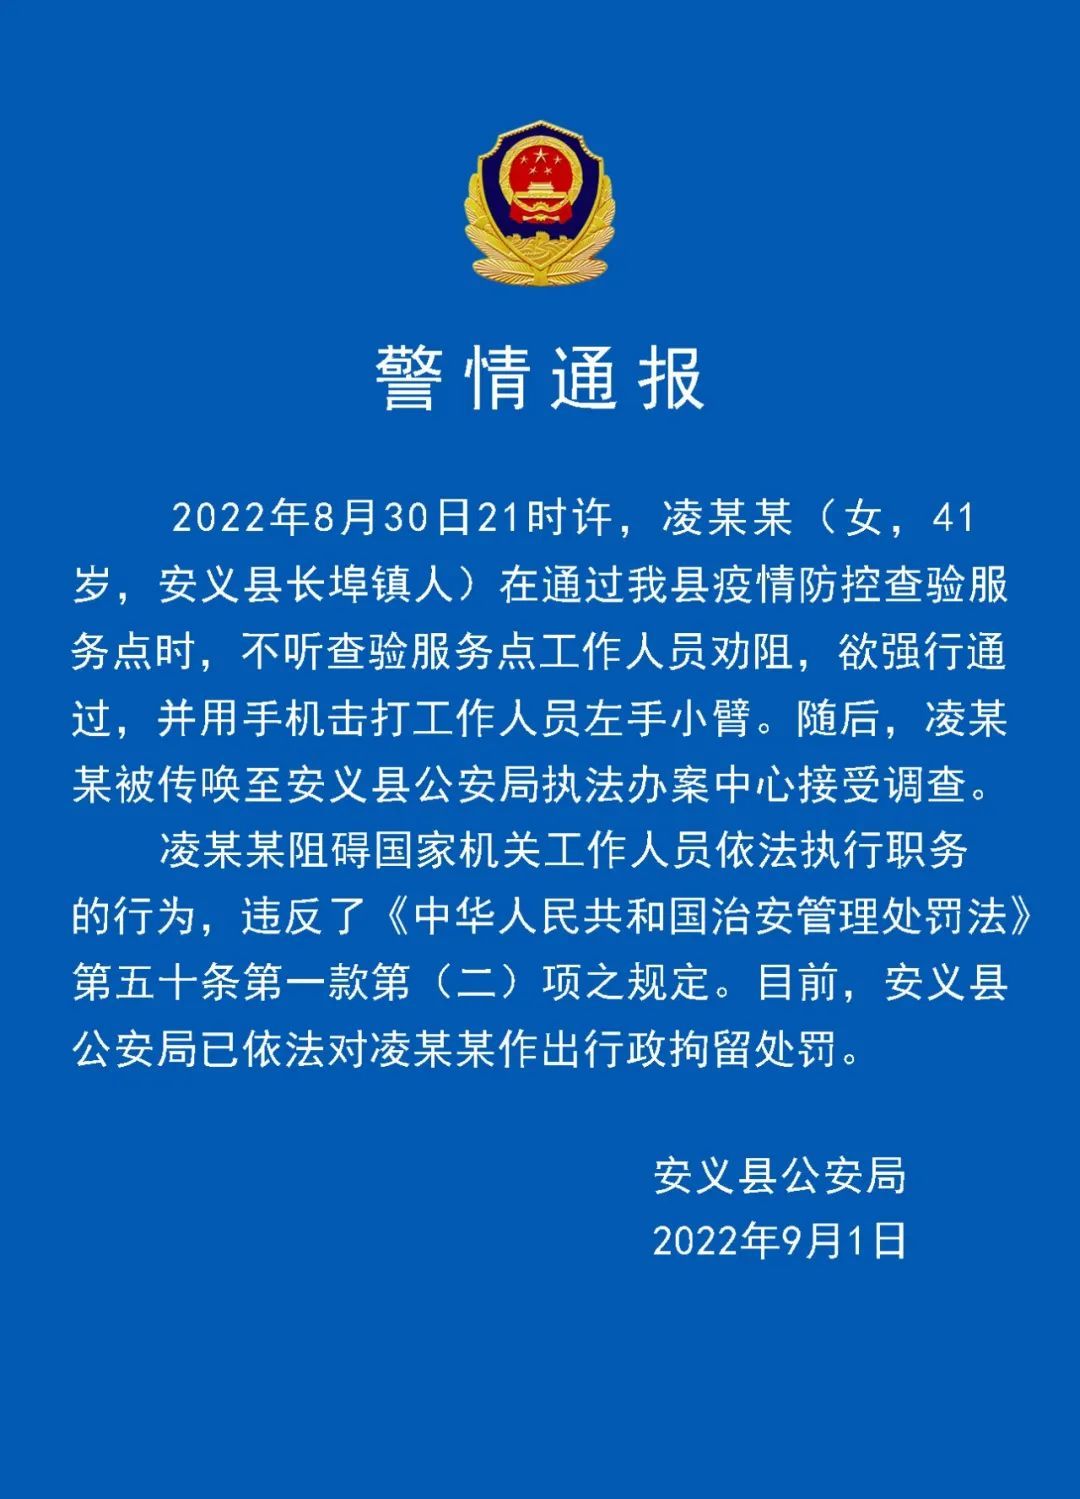 “安义县”江西南昌安义县一女子通过防疫查验点时用手机击打工作人员，被警方行拘